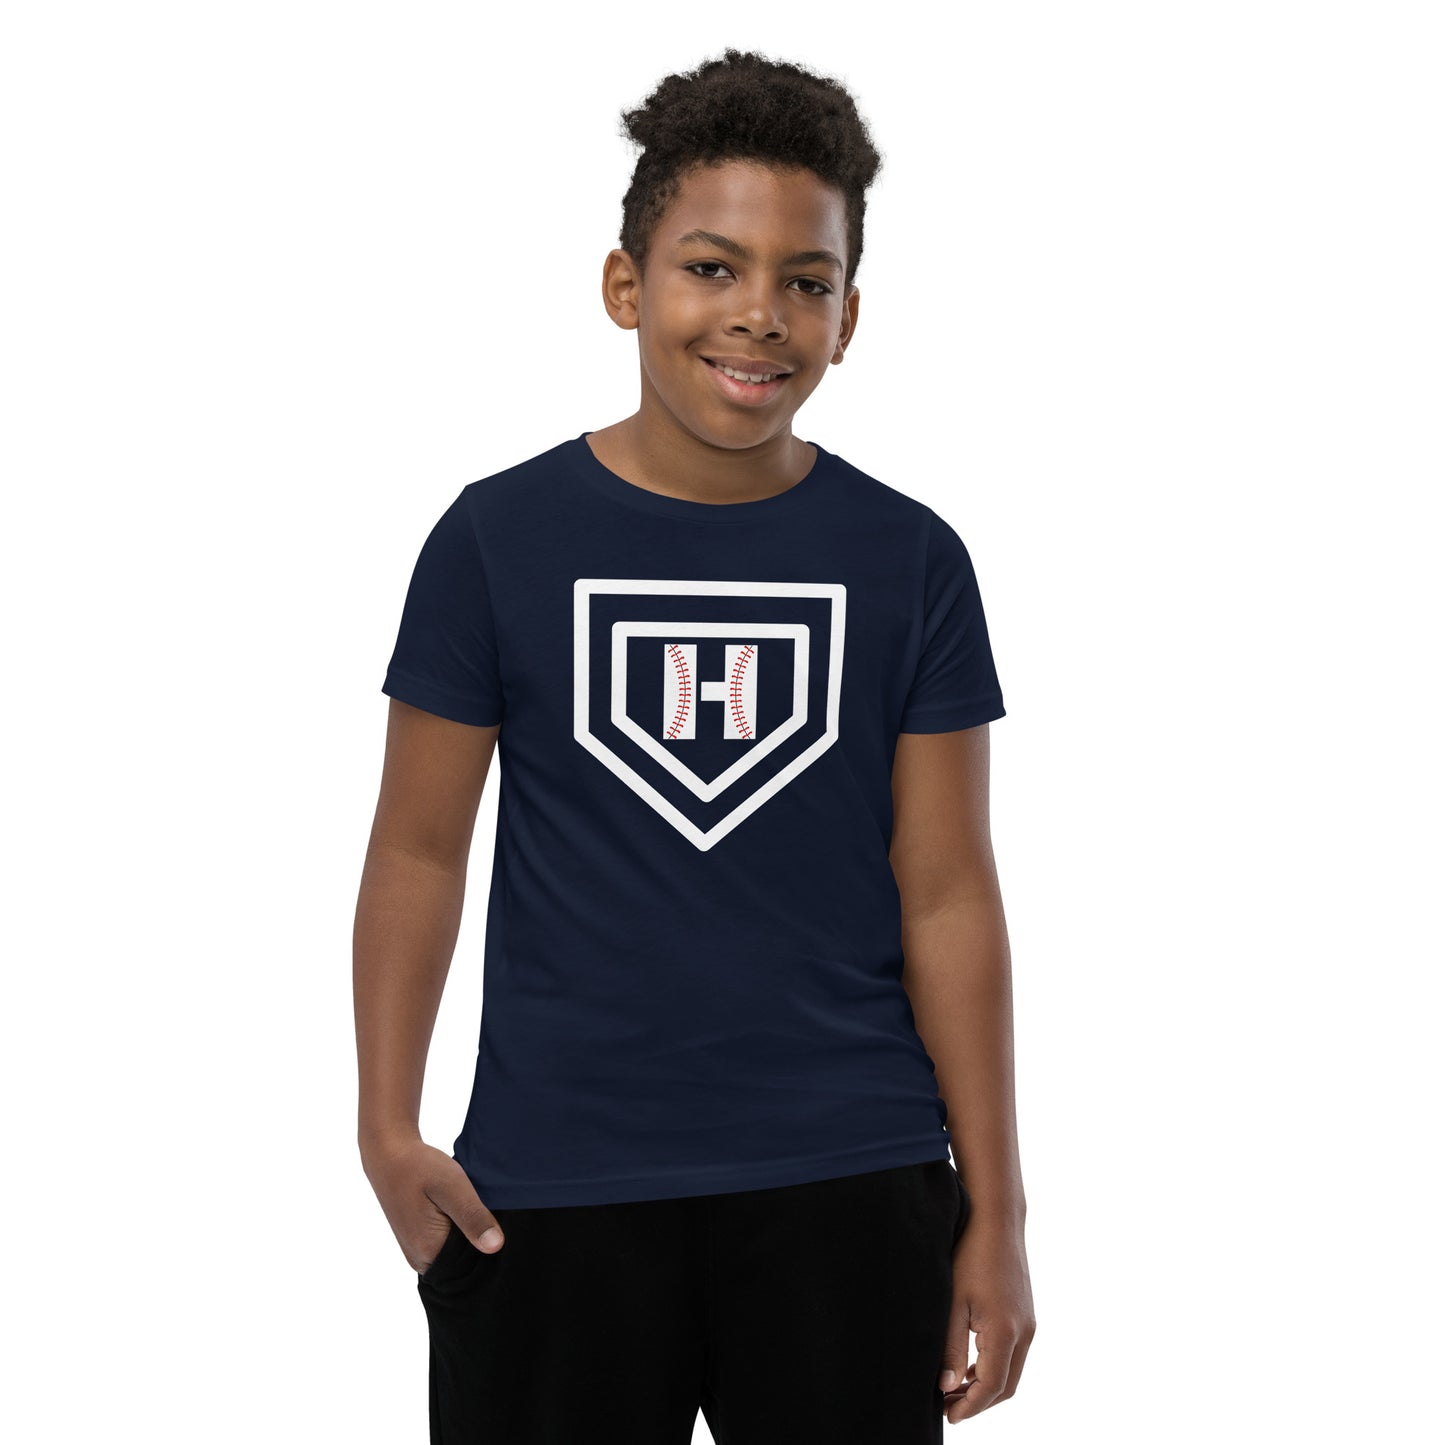 White H Seam Logo Youth Short Sleeve T-Shirt